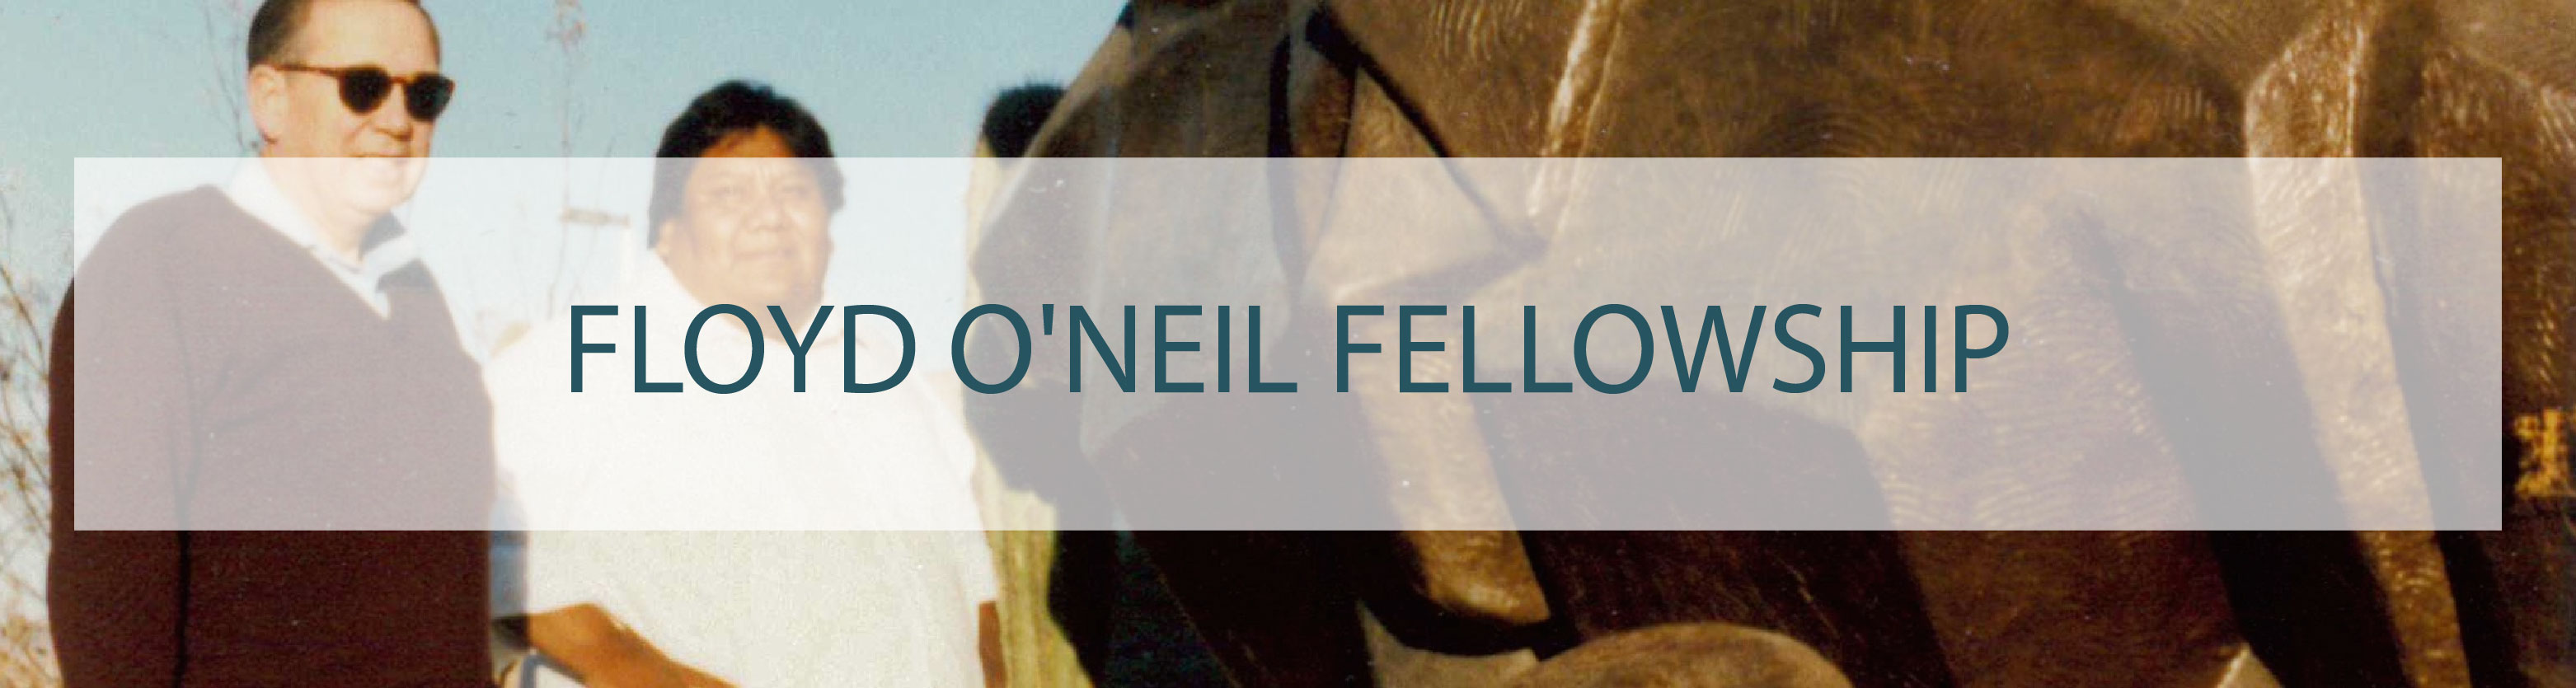 Floyd O'Neil Fellowship 